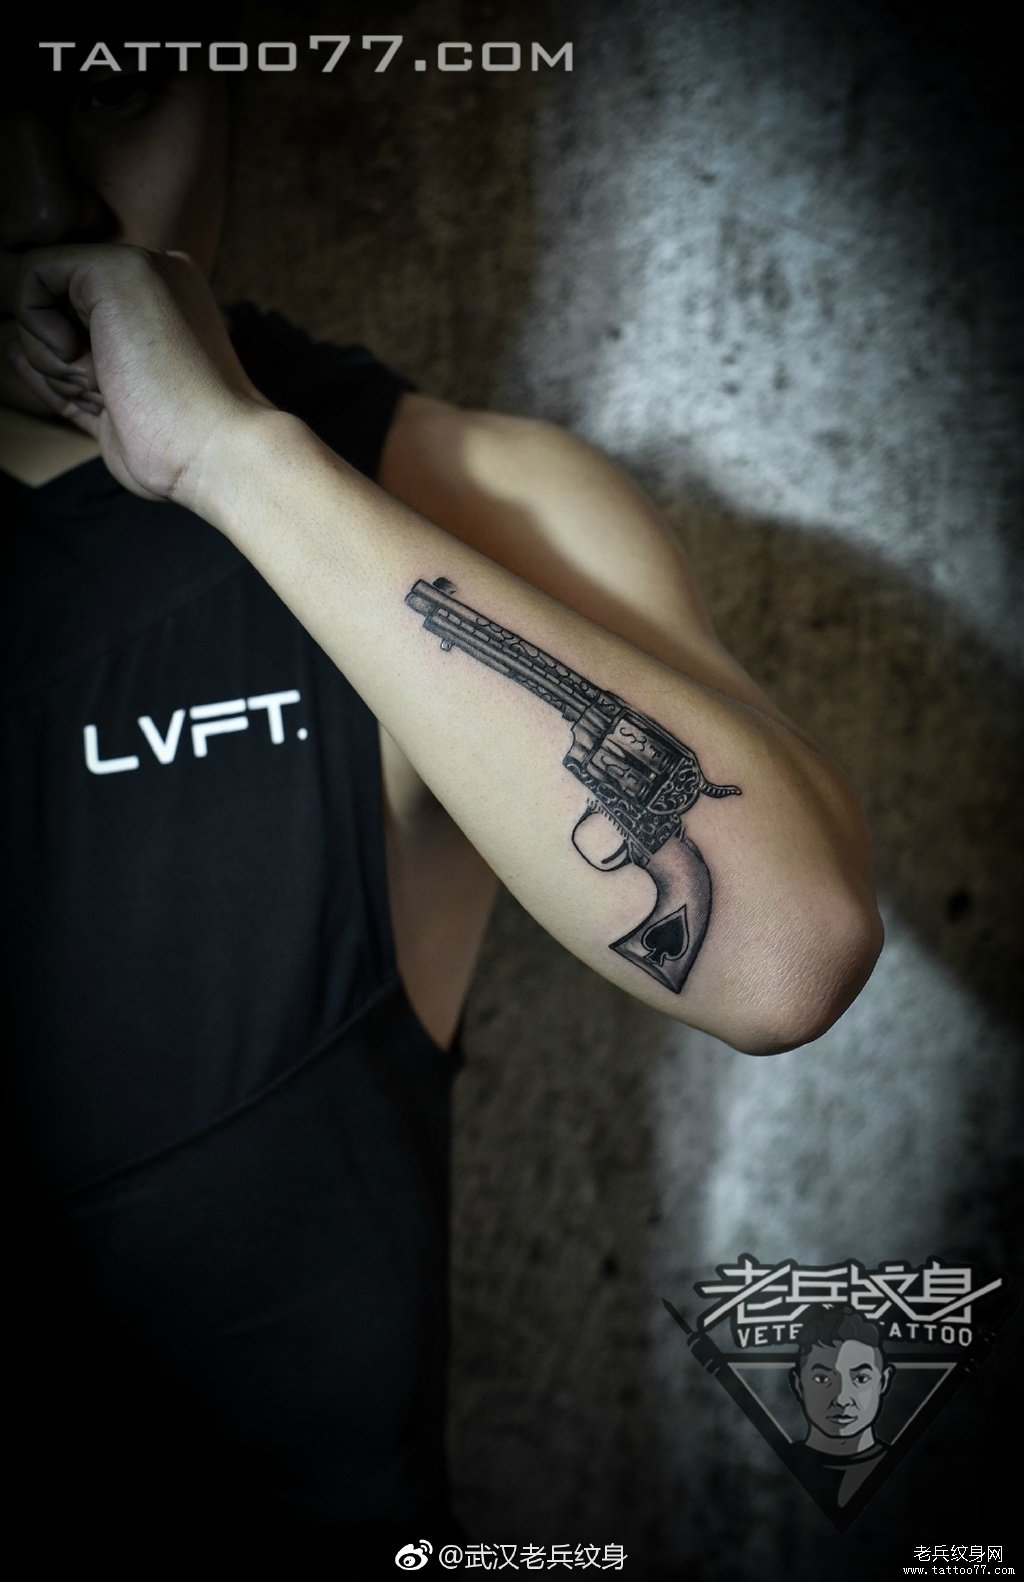 武汉纹身店打造手部手枪纹身图案作品